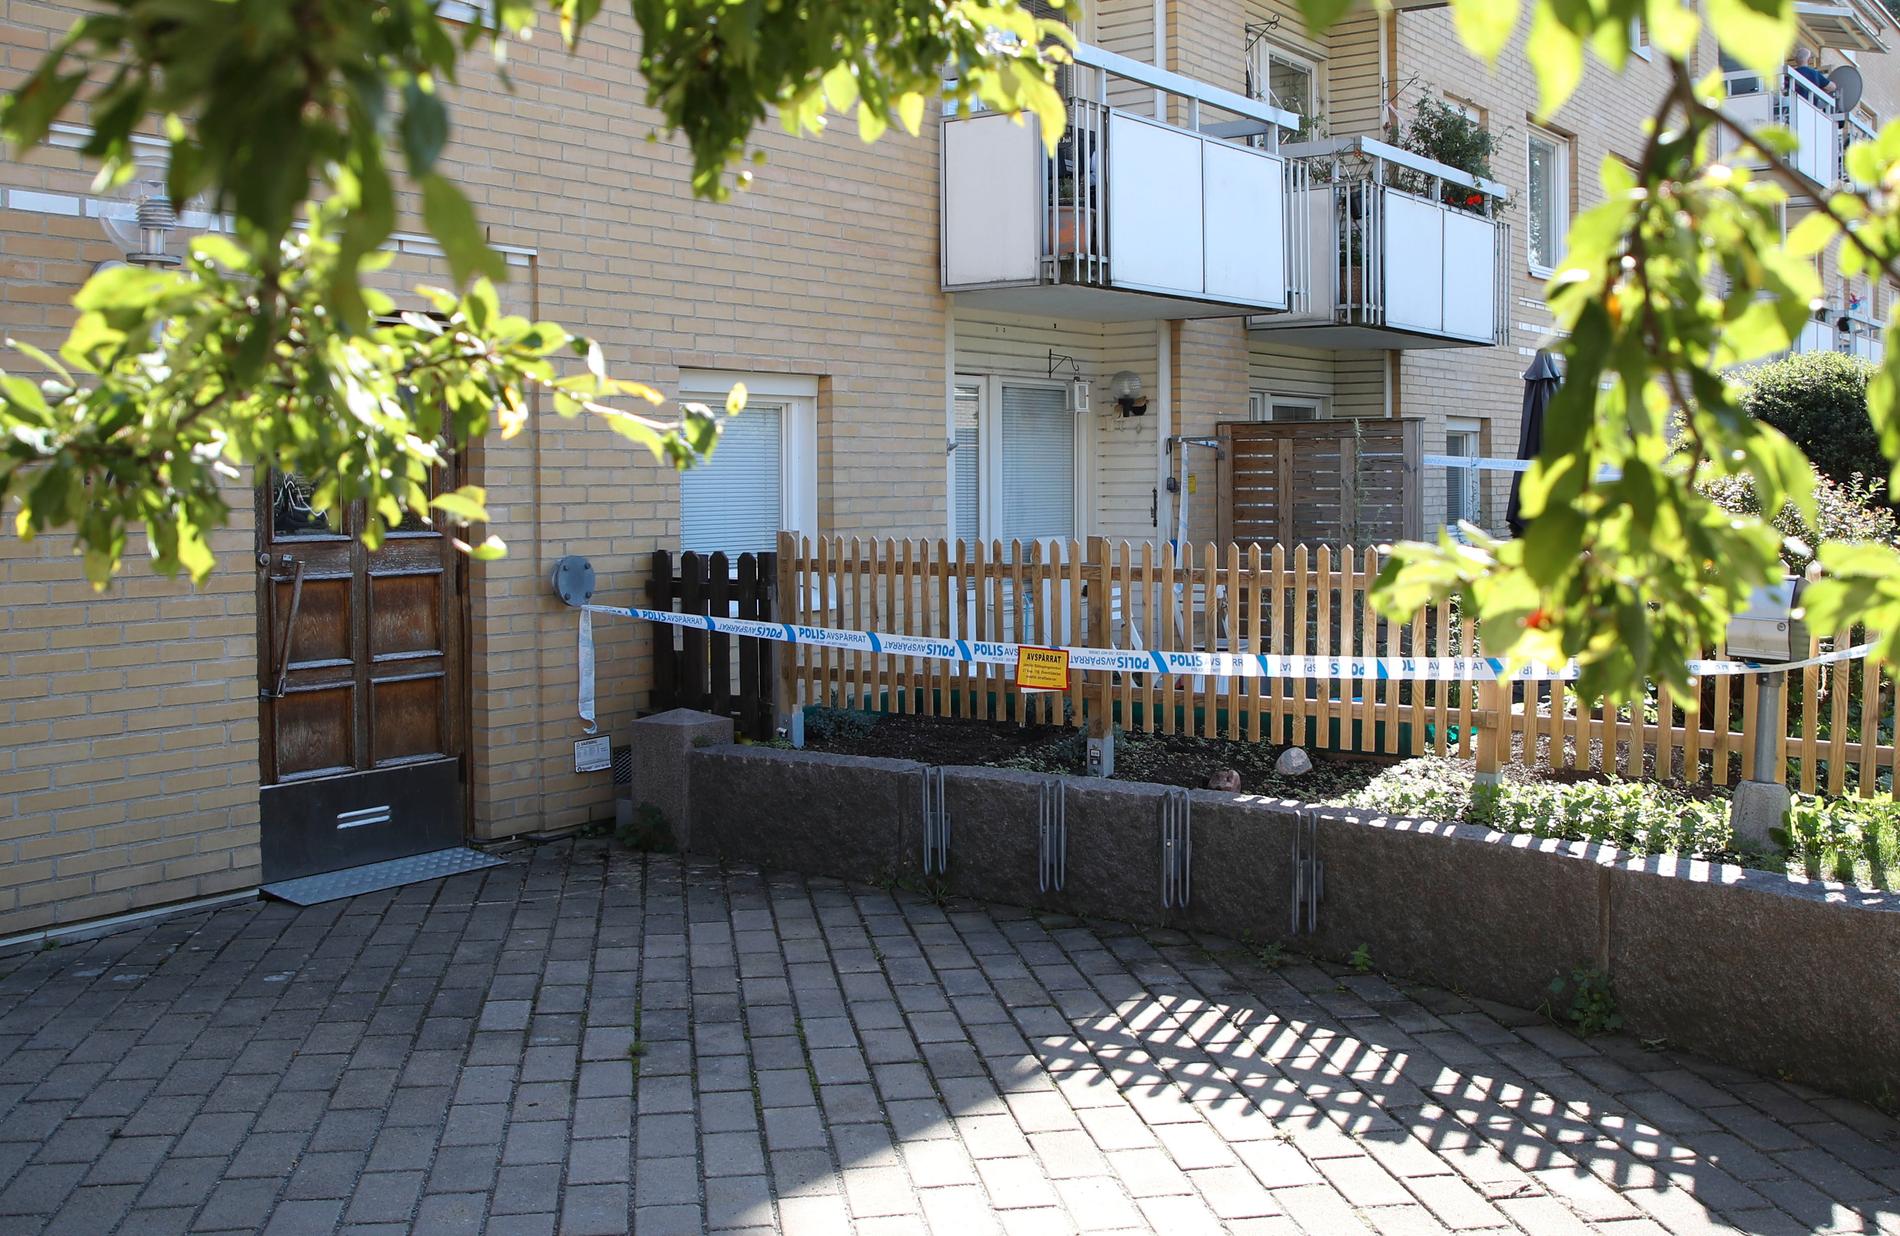 En kvinna och två barn hittades döda i en lägenhet i Göteborg i september. Nu åtalas mannen i familjen misstänkt för tre mord.